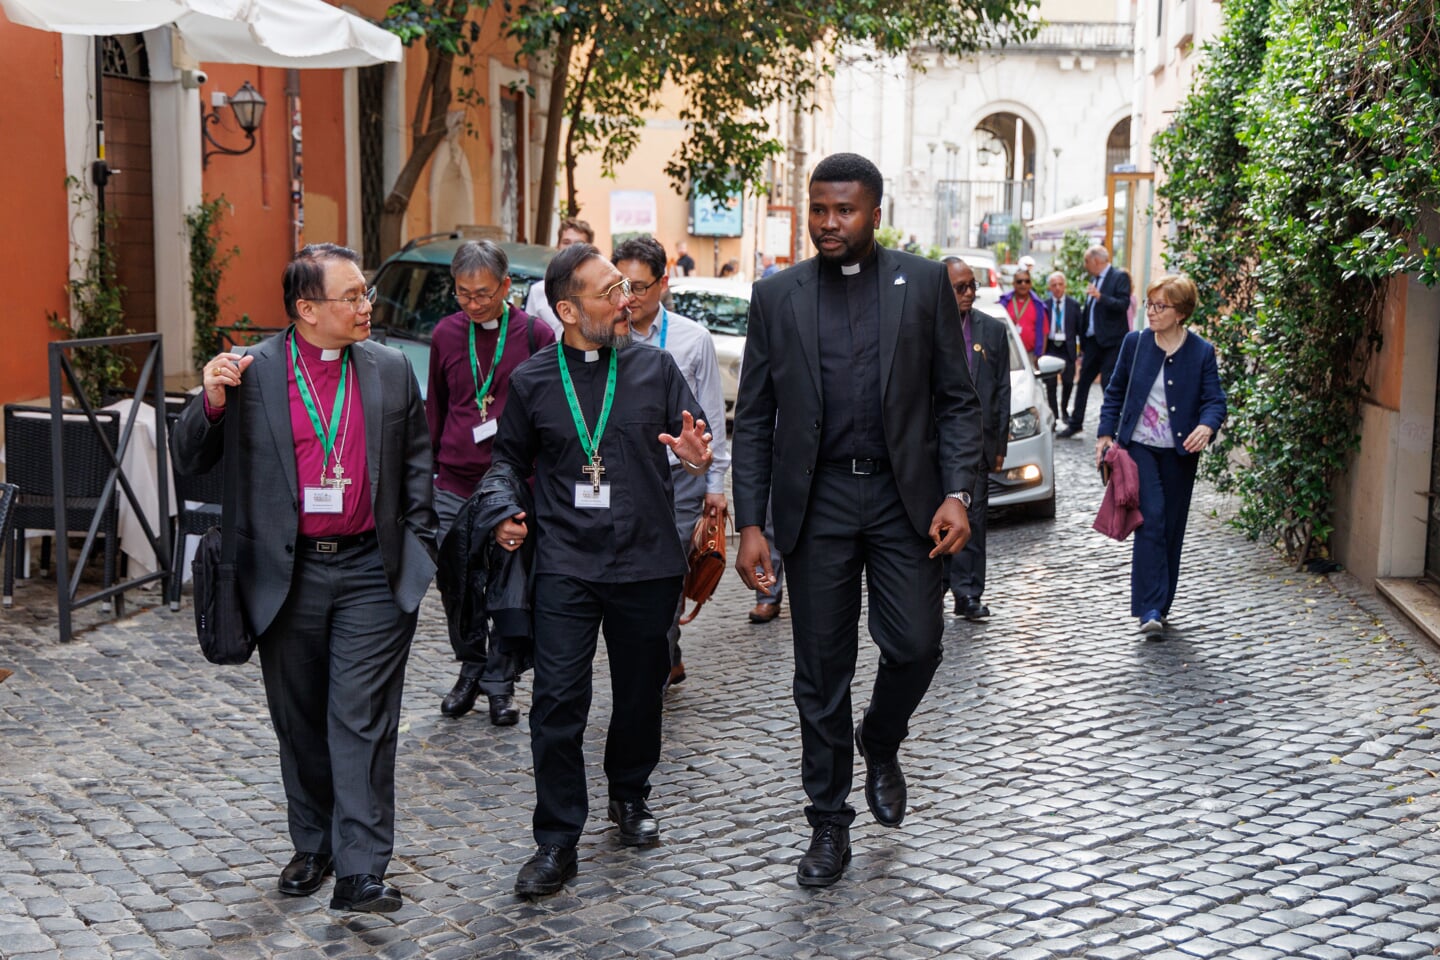 De anglicaanse (aarts)bisschoppen van Hongkong en Zuidoost-Azië maken een rondje door de wijk Trastevere, met een priester van de Sant’ Egidio-beweging.